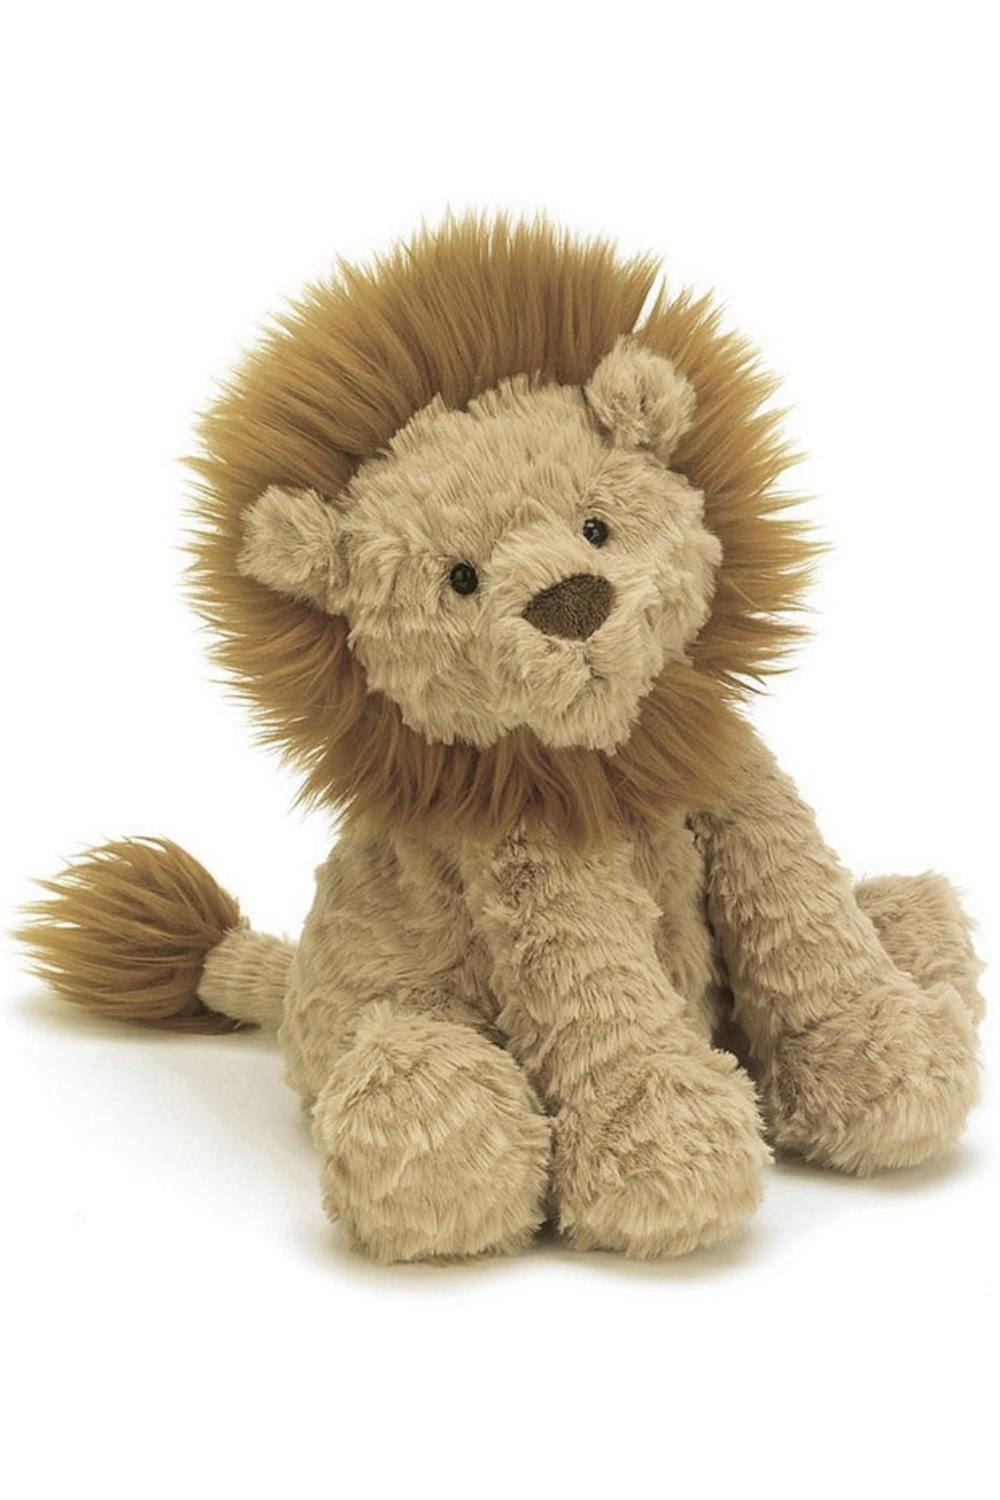 JELLYCAT Fuddlewuddle Stuffed Lion